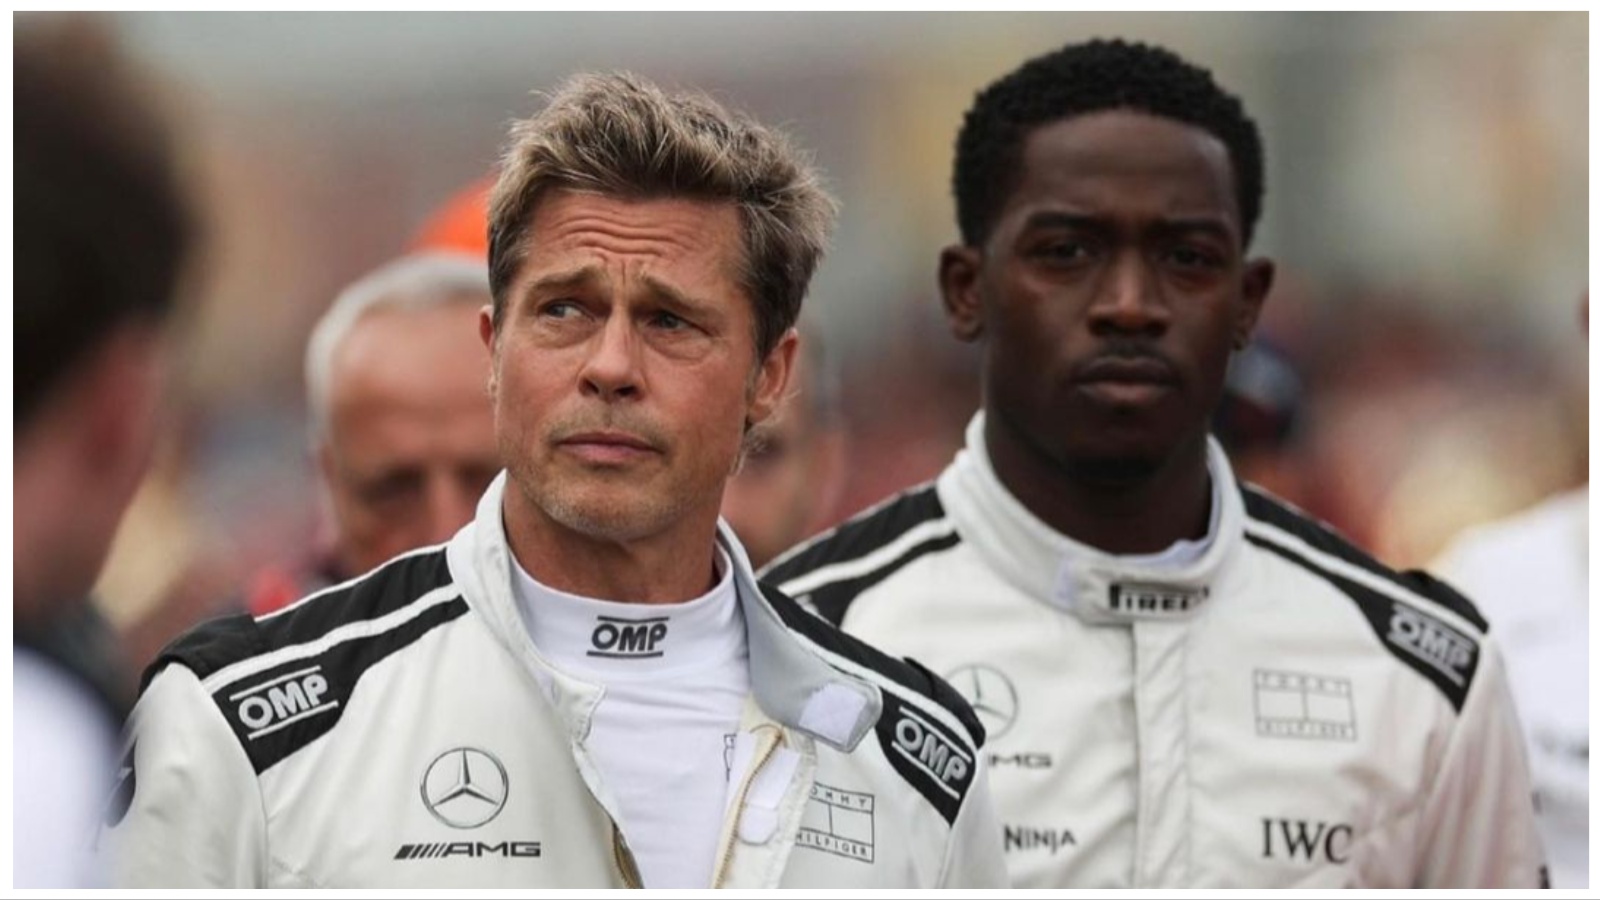 Počelo je snimanje novog F1 filma – Brad Pitt u glavnoj ulozi